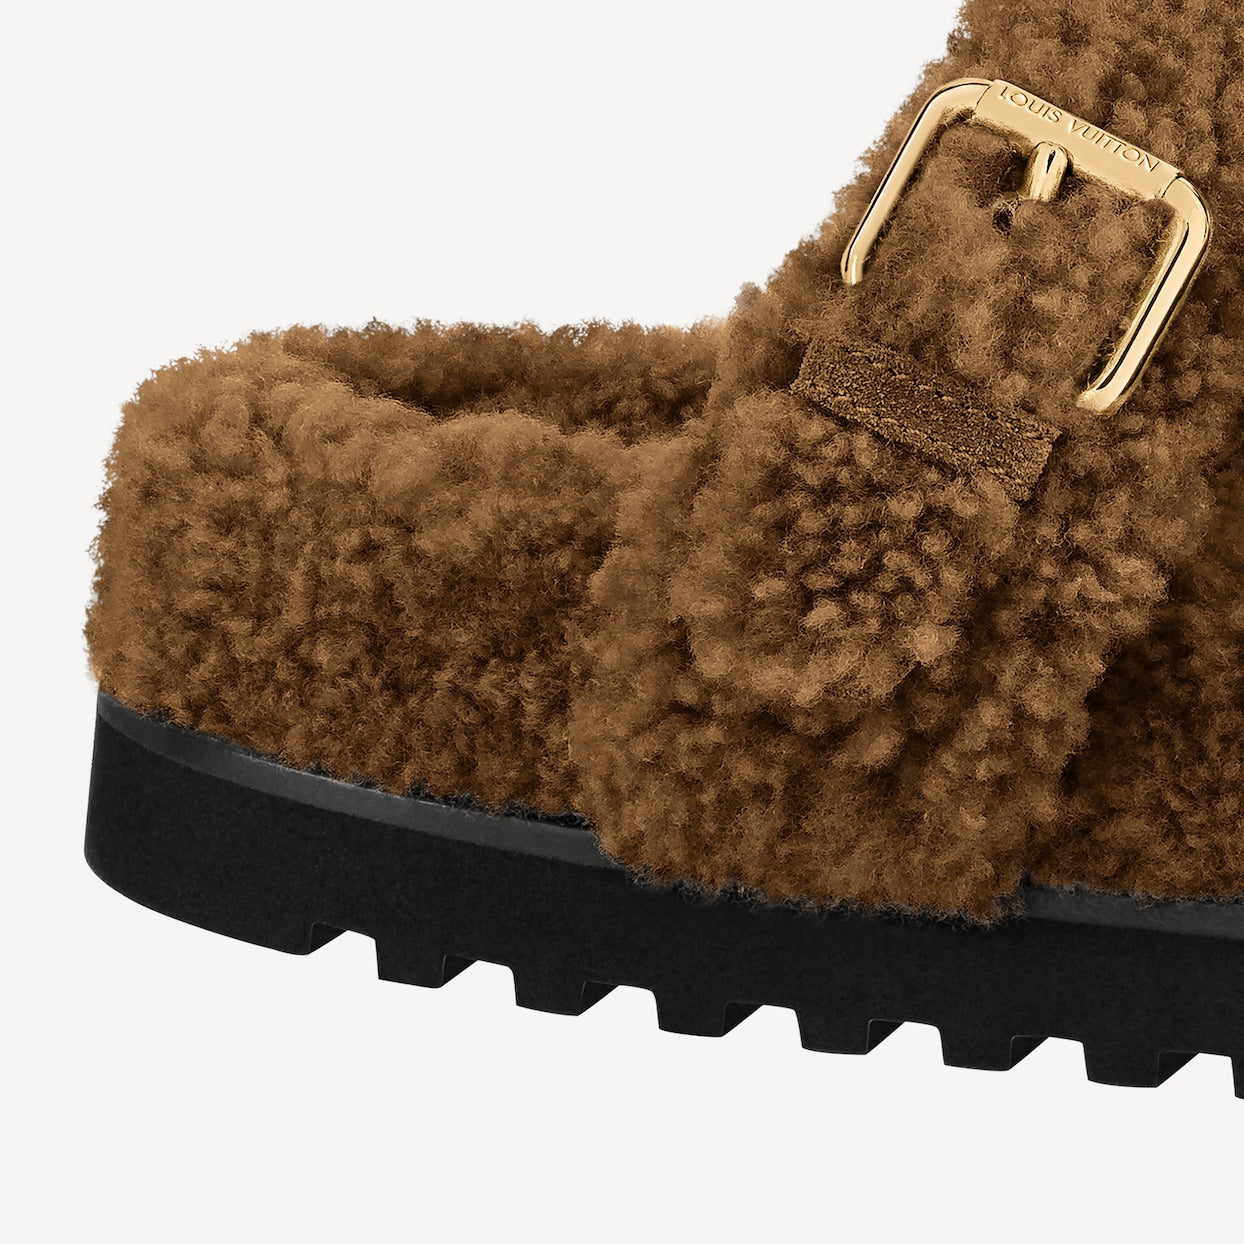 Louis Vuitton Beige Paseo Flat Comfort Mules – MILNY PARLON